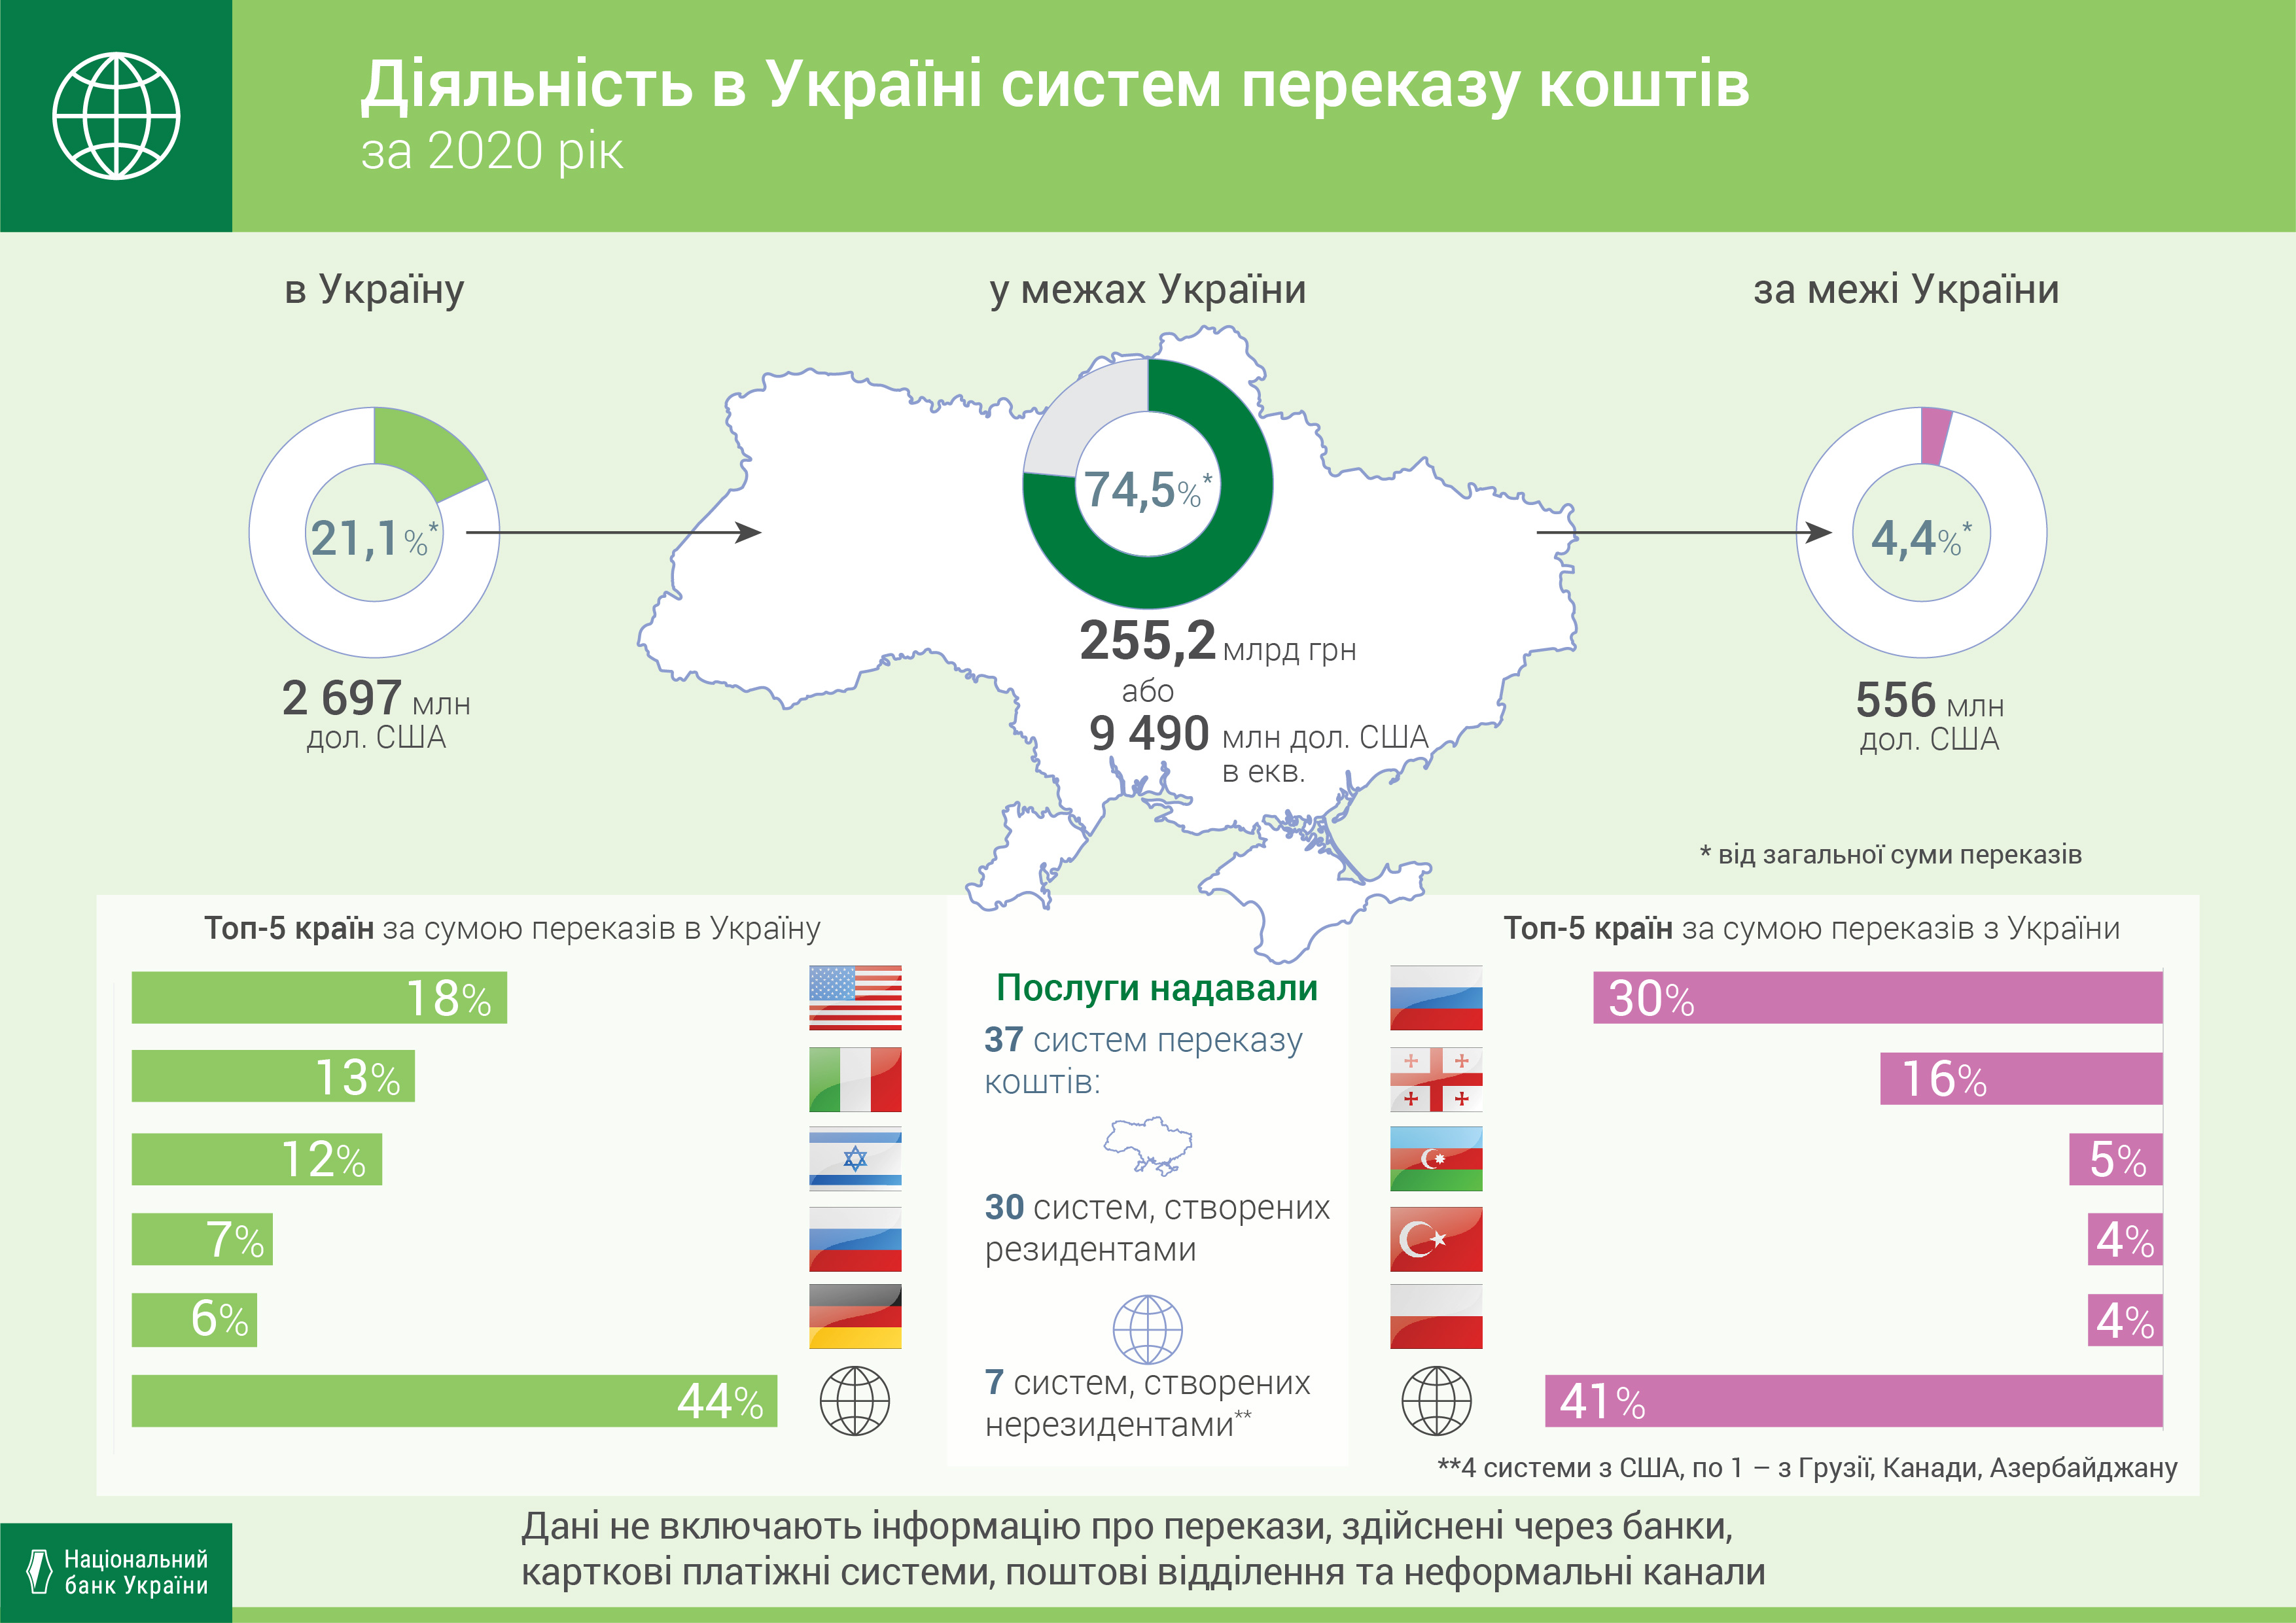 Діяльність в Україні систем переказу коштів, 2020 рік